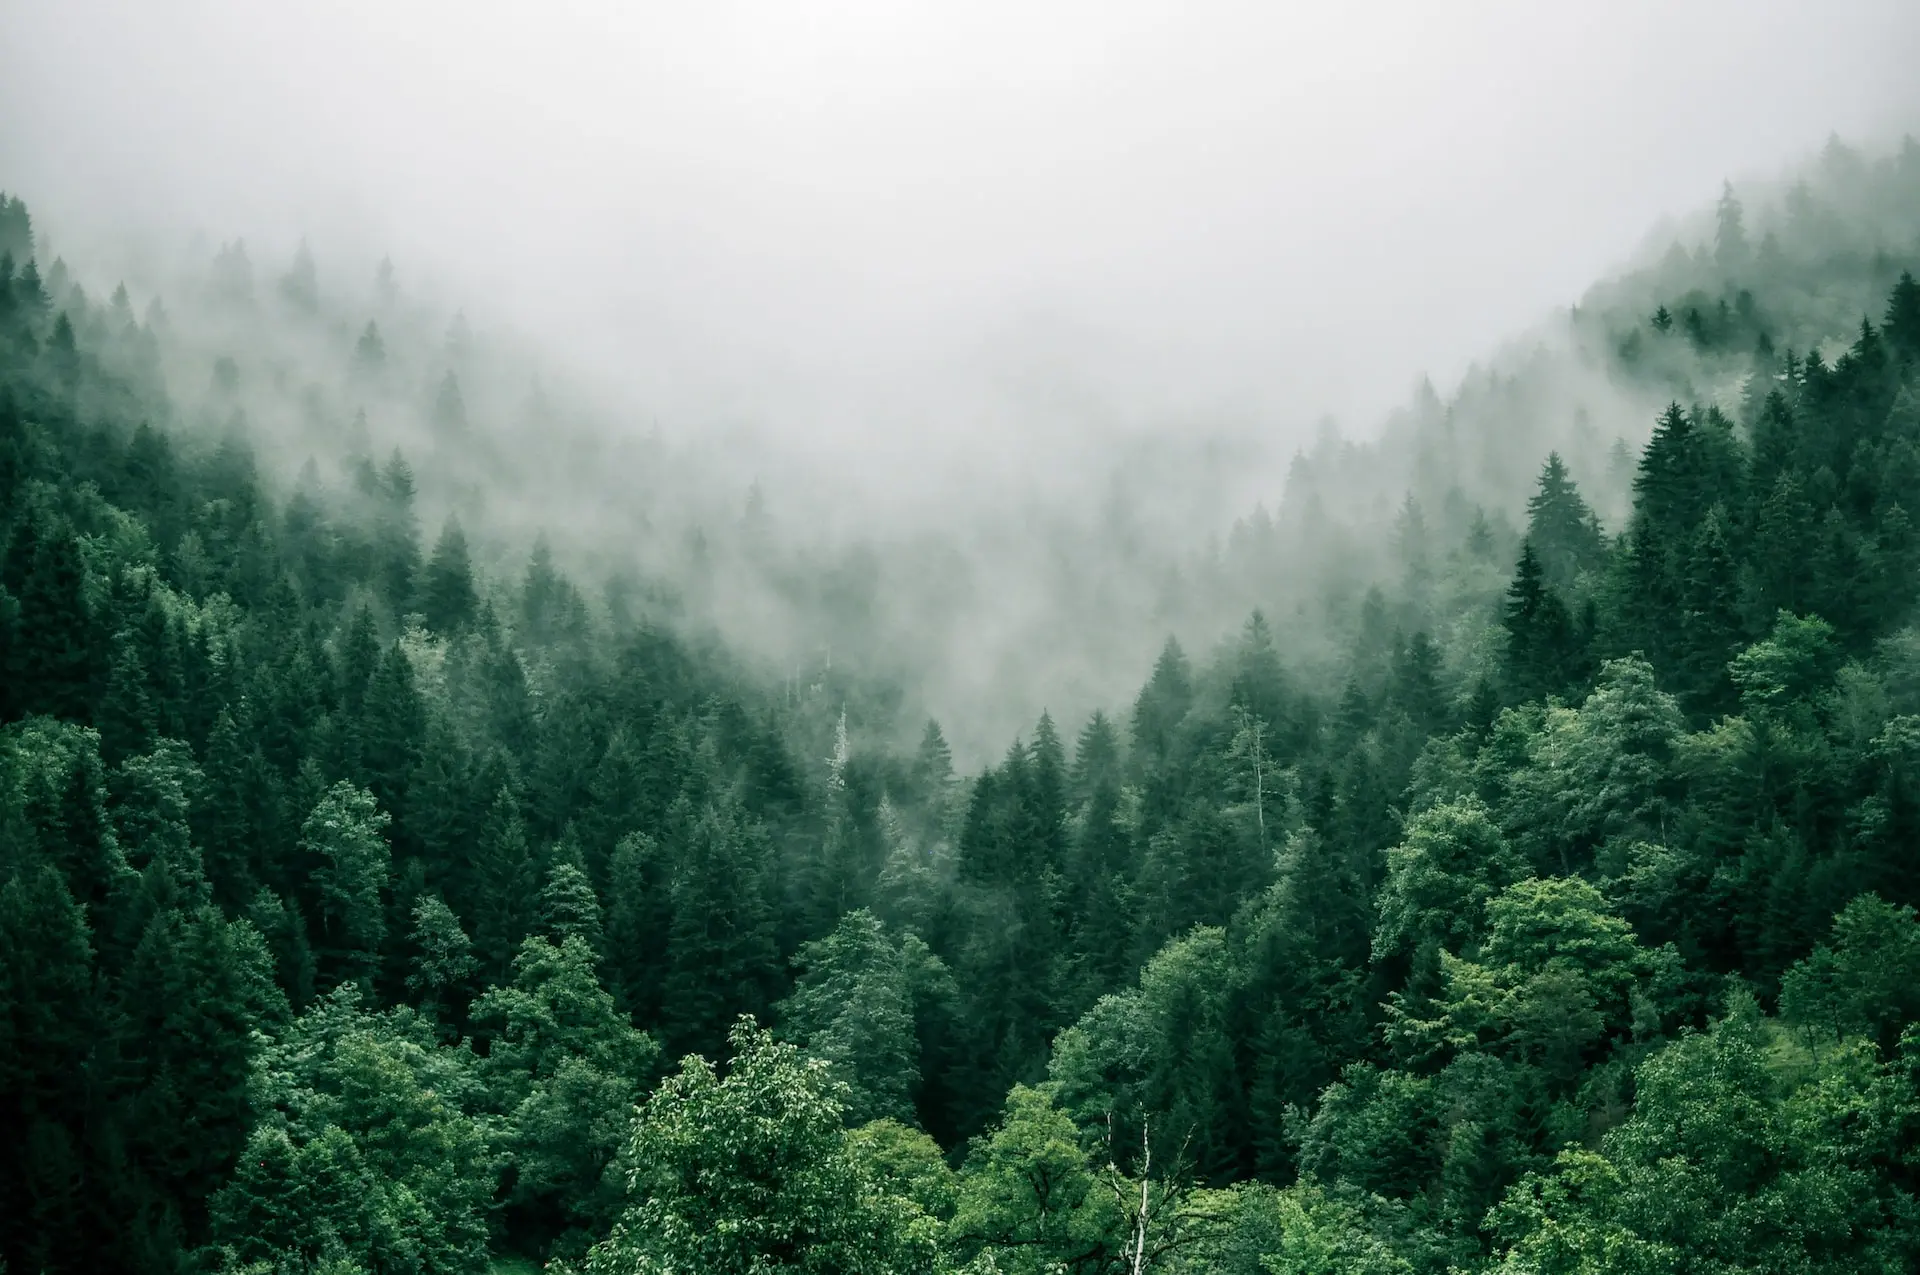 Khám phá hình ảnh về những khu rừng xanh đẹp mắt và đầy sức sống, trong đó ghi lại các nỗ lực khắc phục tình trạng mất rừng đang diễn ra trên toàn thế giới.